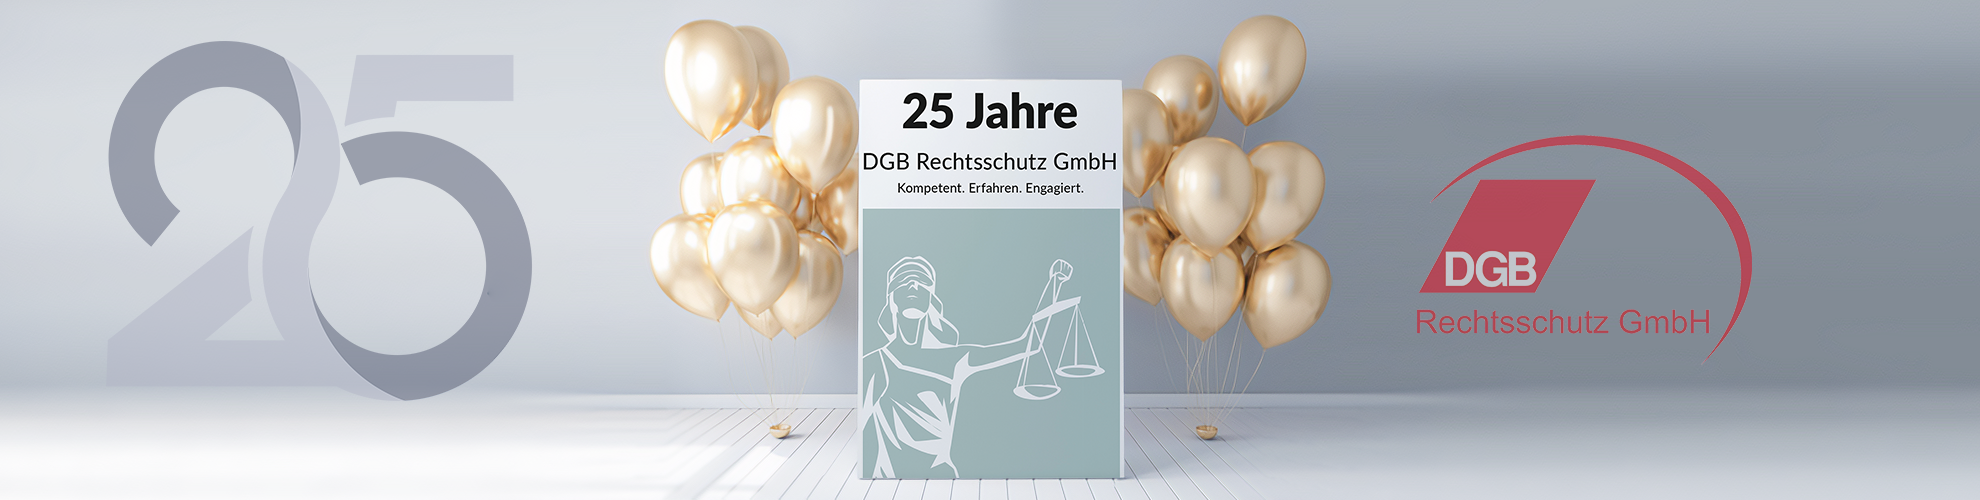 25 Jahre DGB Rechtsschutz GmbH